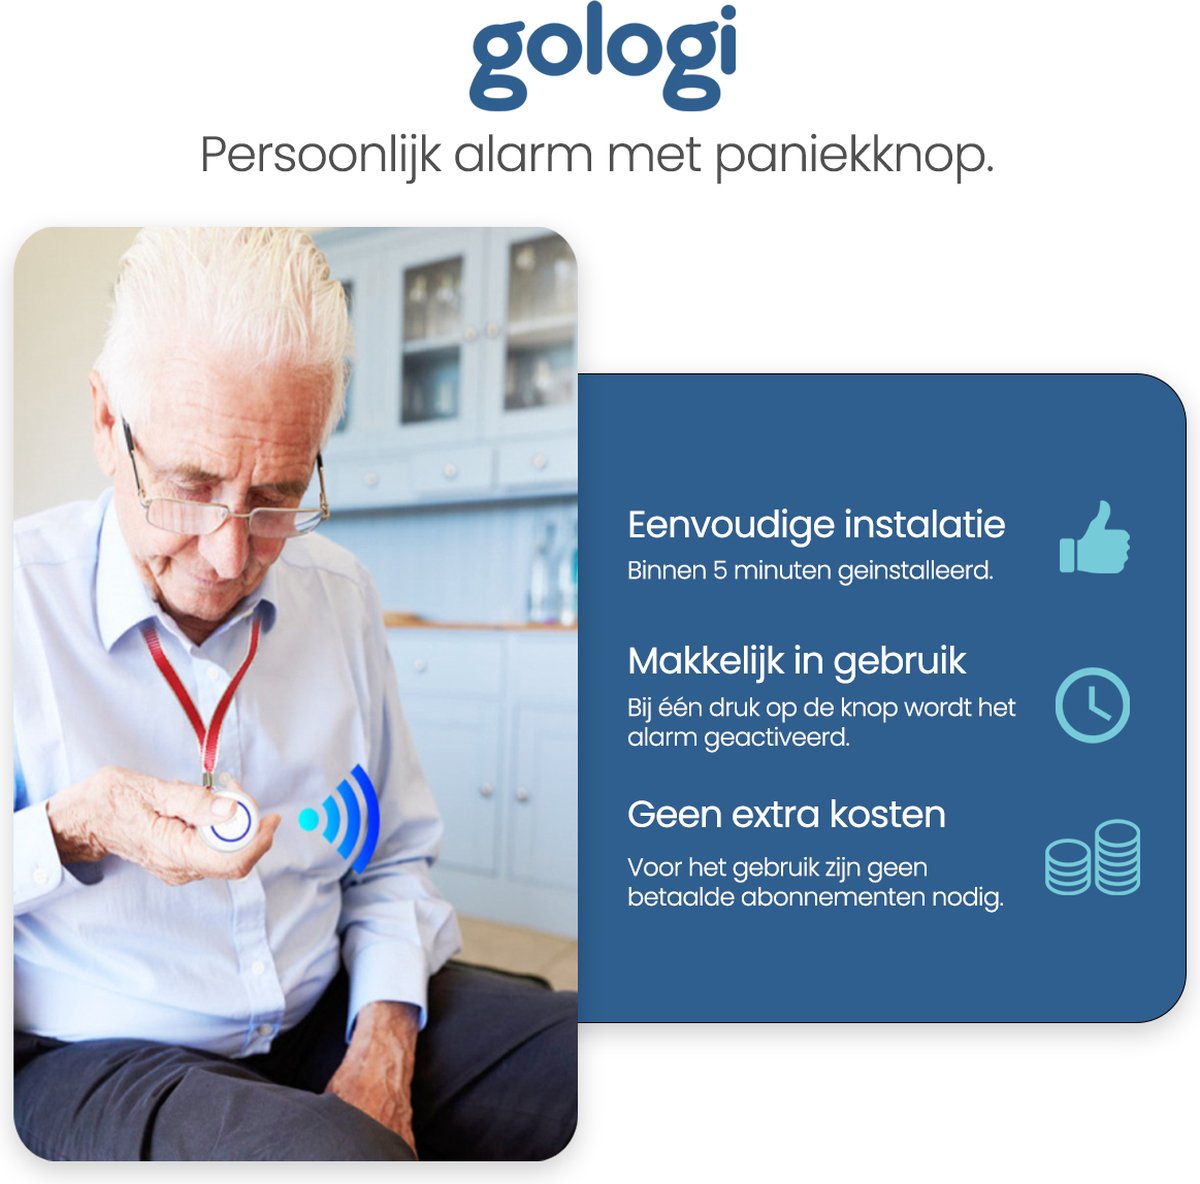 Gologi Slim persoonlijk alarm - Paniekknop - Senioren alarm - Draadloze alarmknop - Noodknop - Ouderen - WIFI - Melding op afstand via app